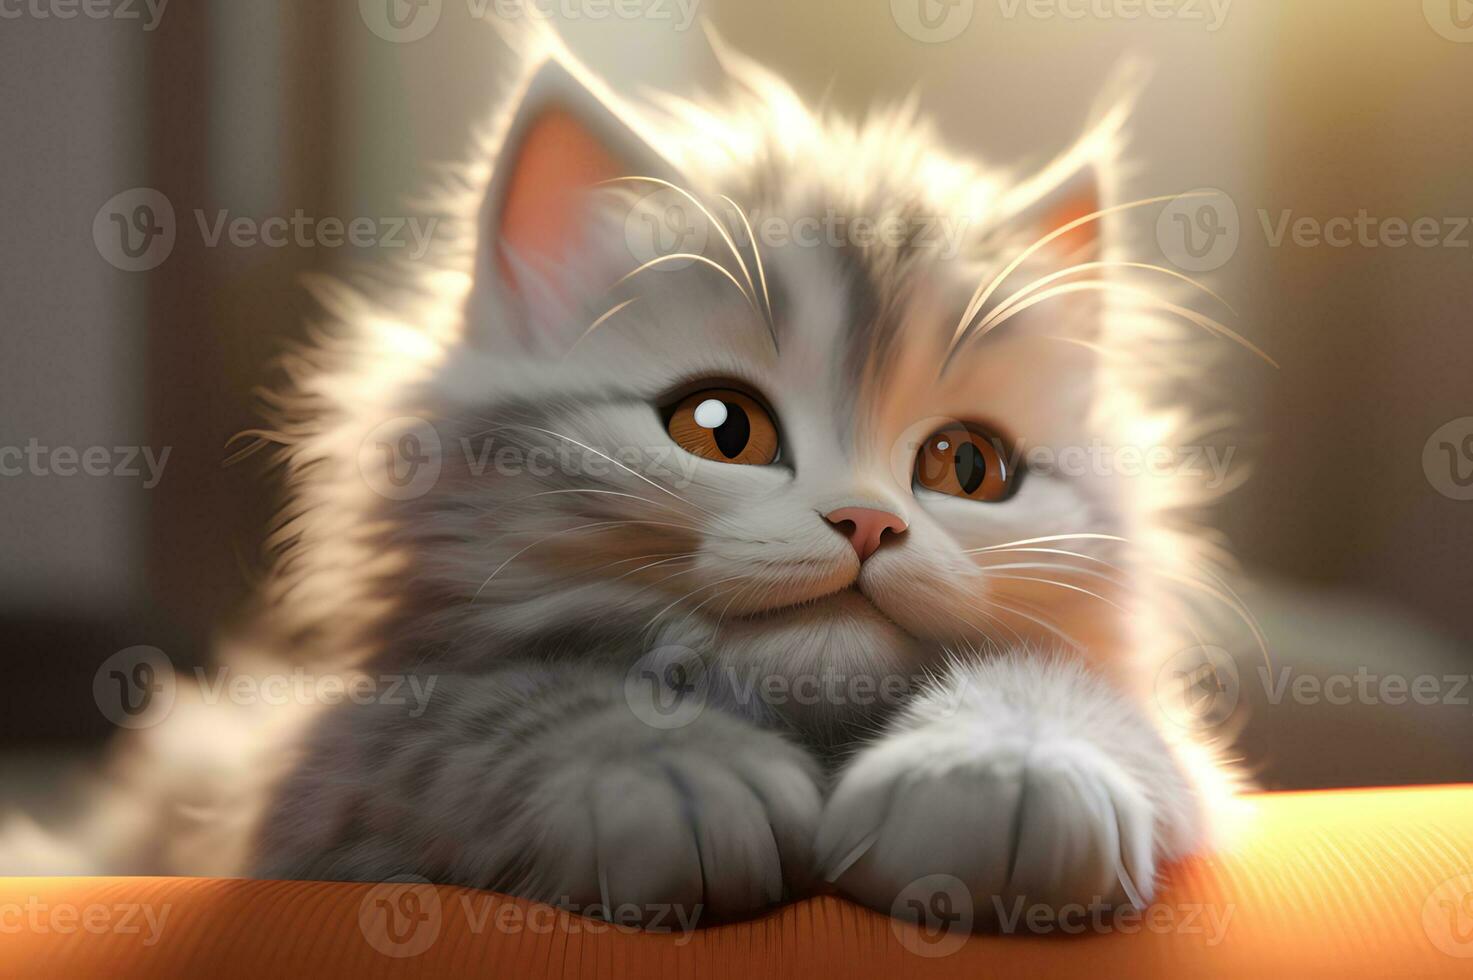 Visualizza di carino adorabile gattino foto